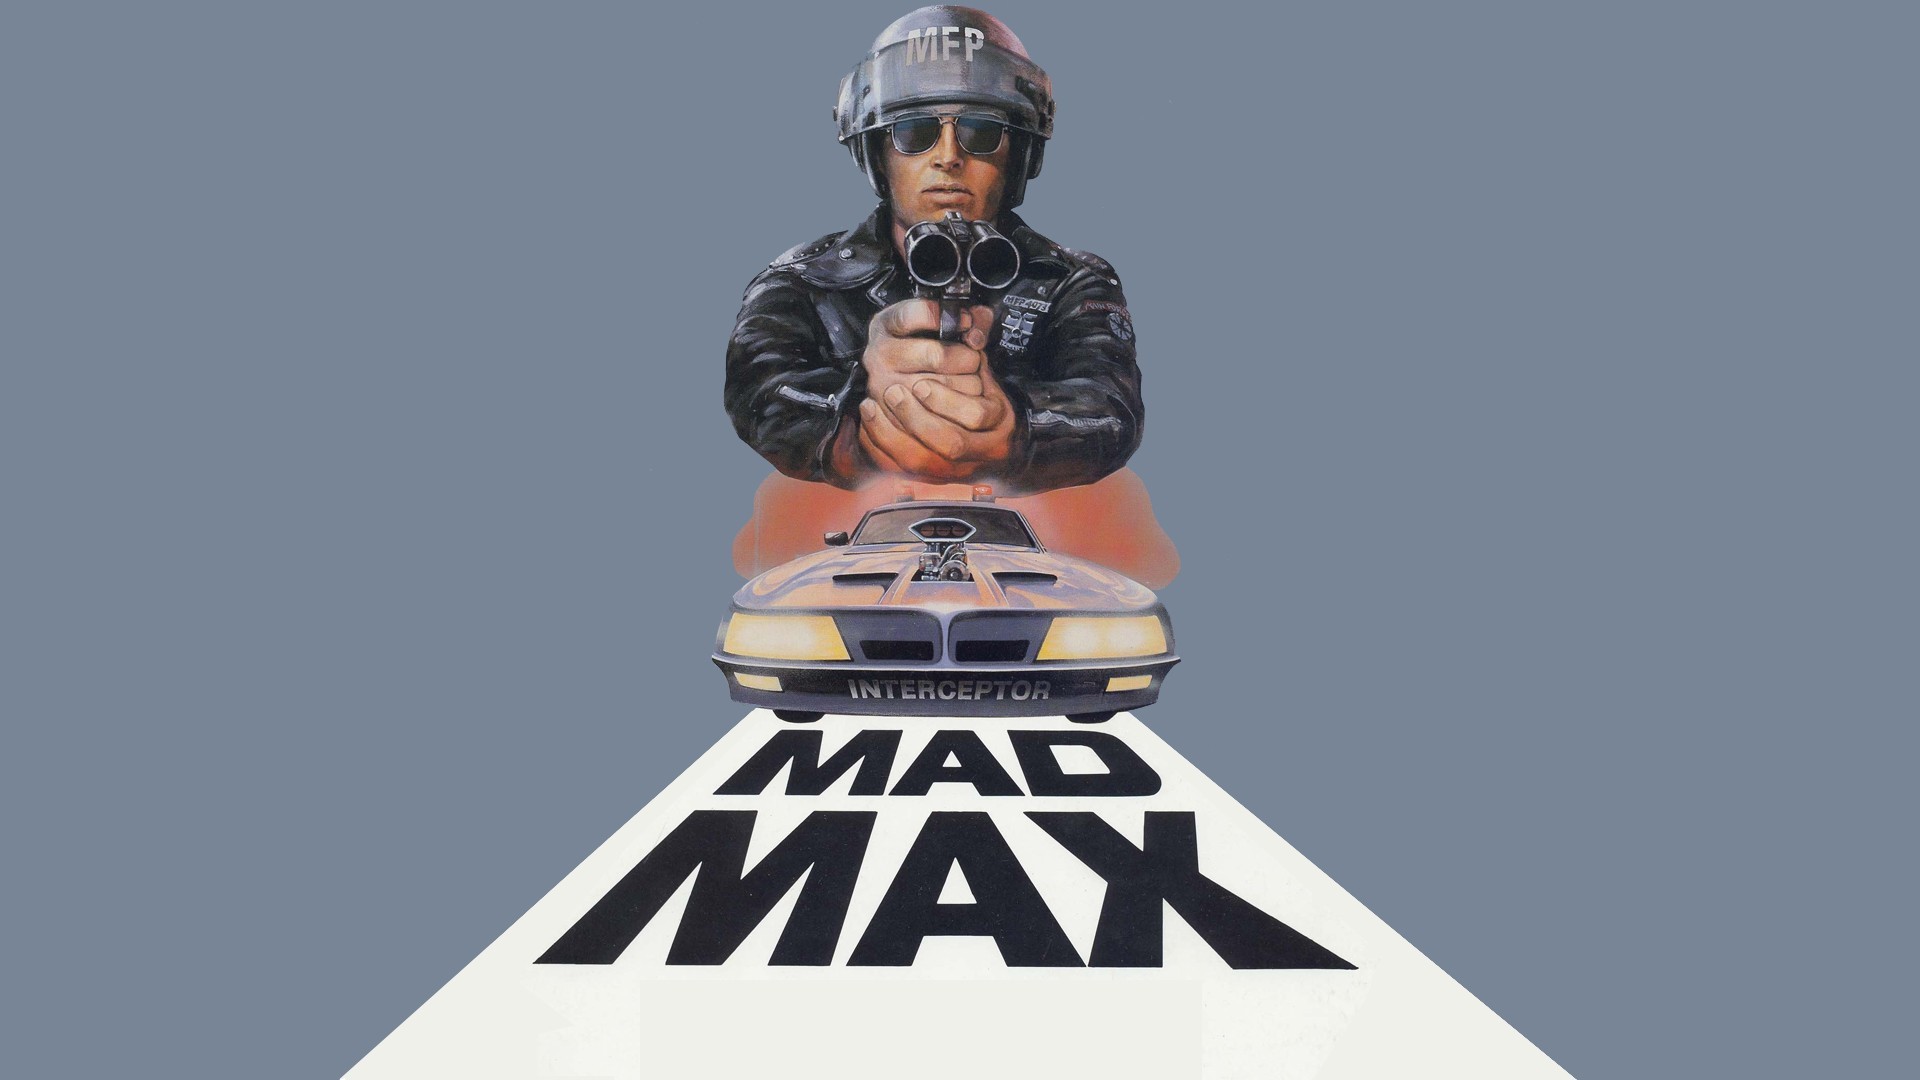 1920x1080 Movie - Mad Max Wallpaper